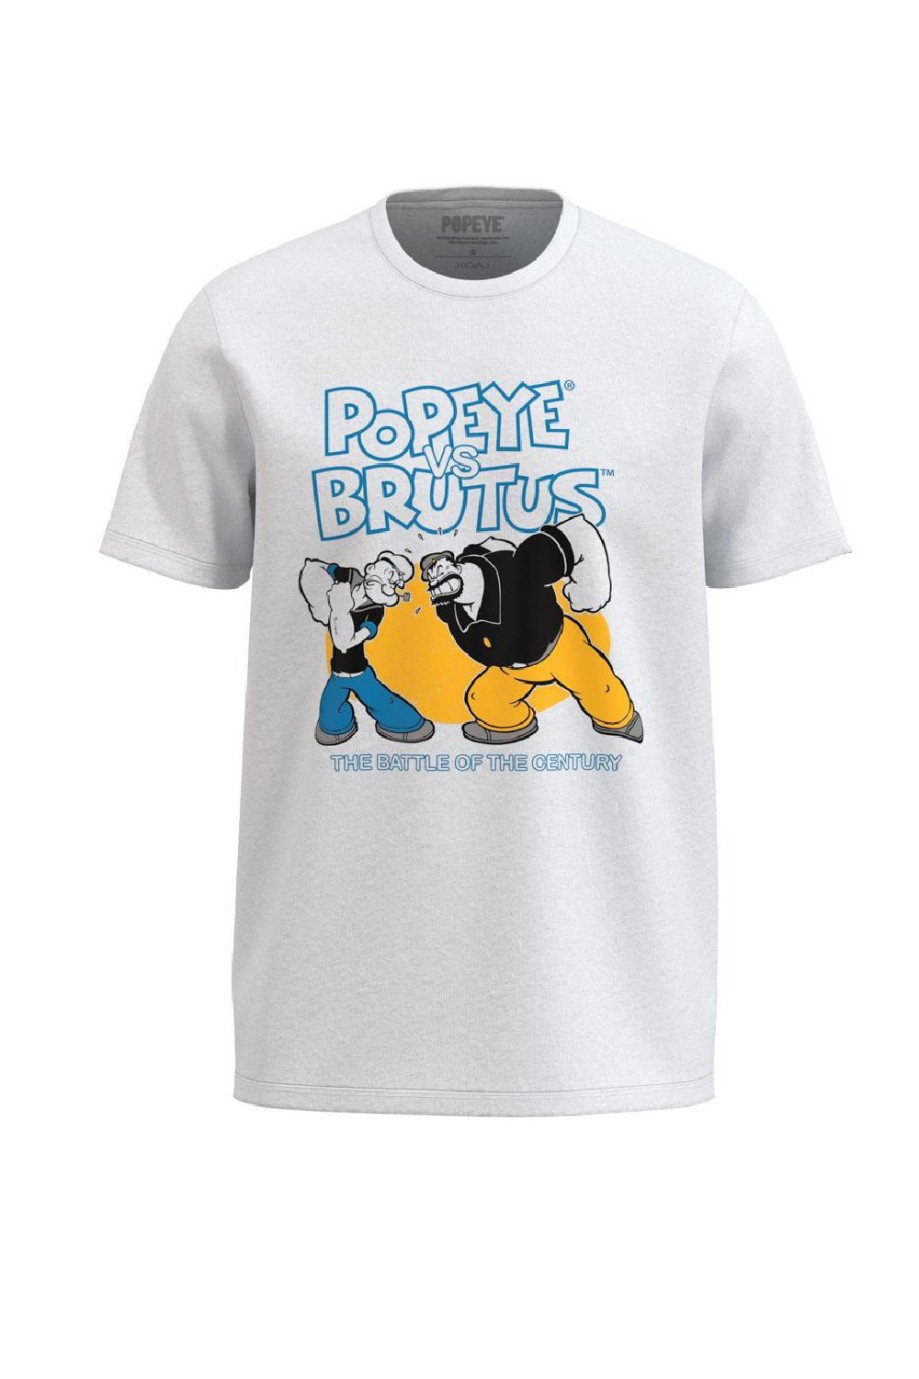 Camiseta unicolor cuello redondo con diseño de Popeye y Brutus